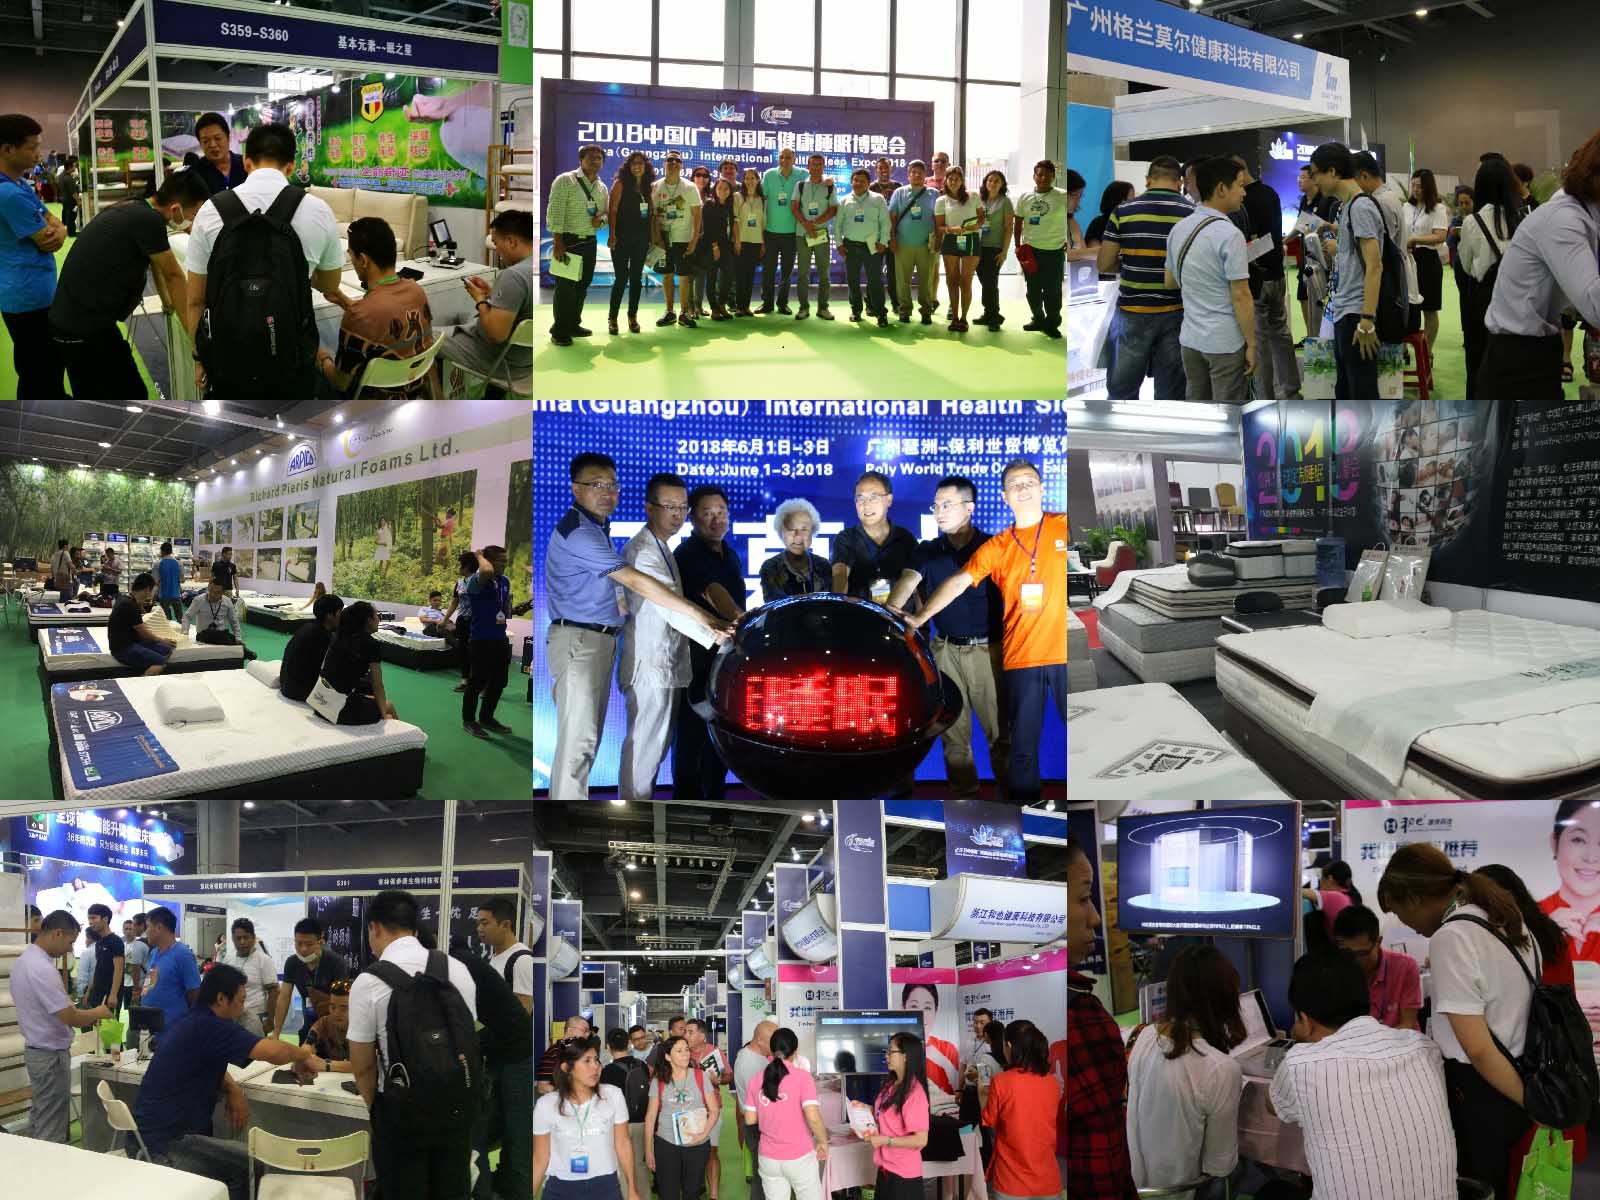 2019 China (Guangzhou) International Health Sleep Expo, Guangzhou, Guangdong, China